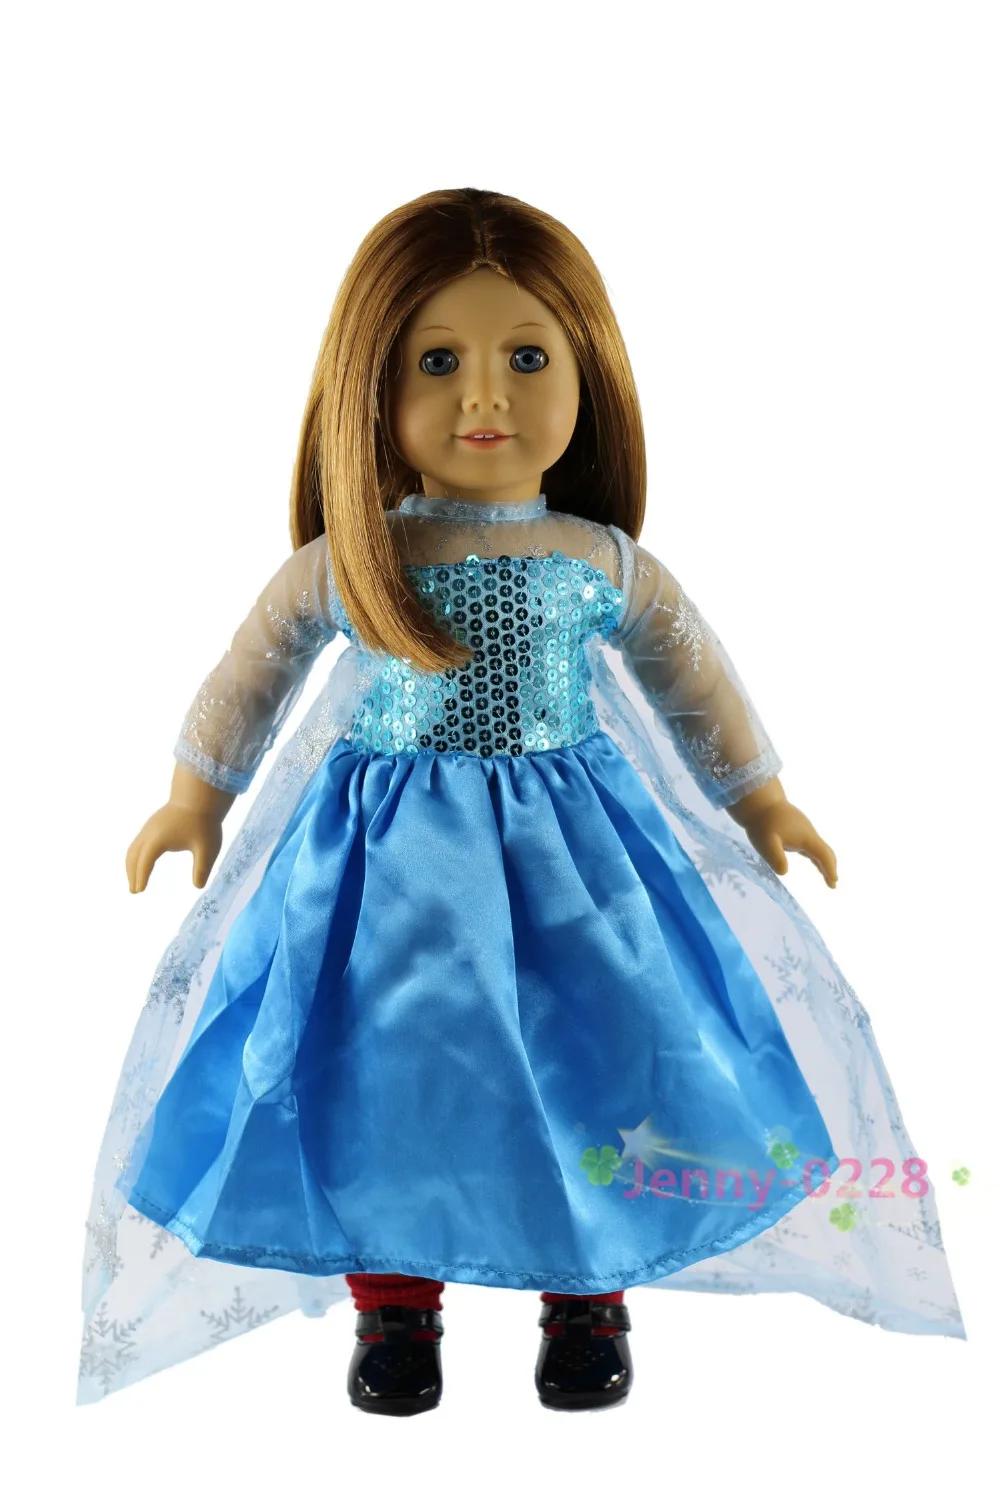 Одежда для кукол синее платье принцессы Эльзы ручной работы американской куклы 18